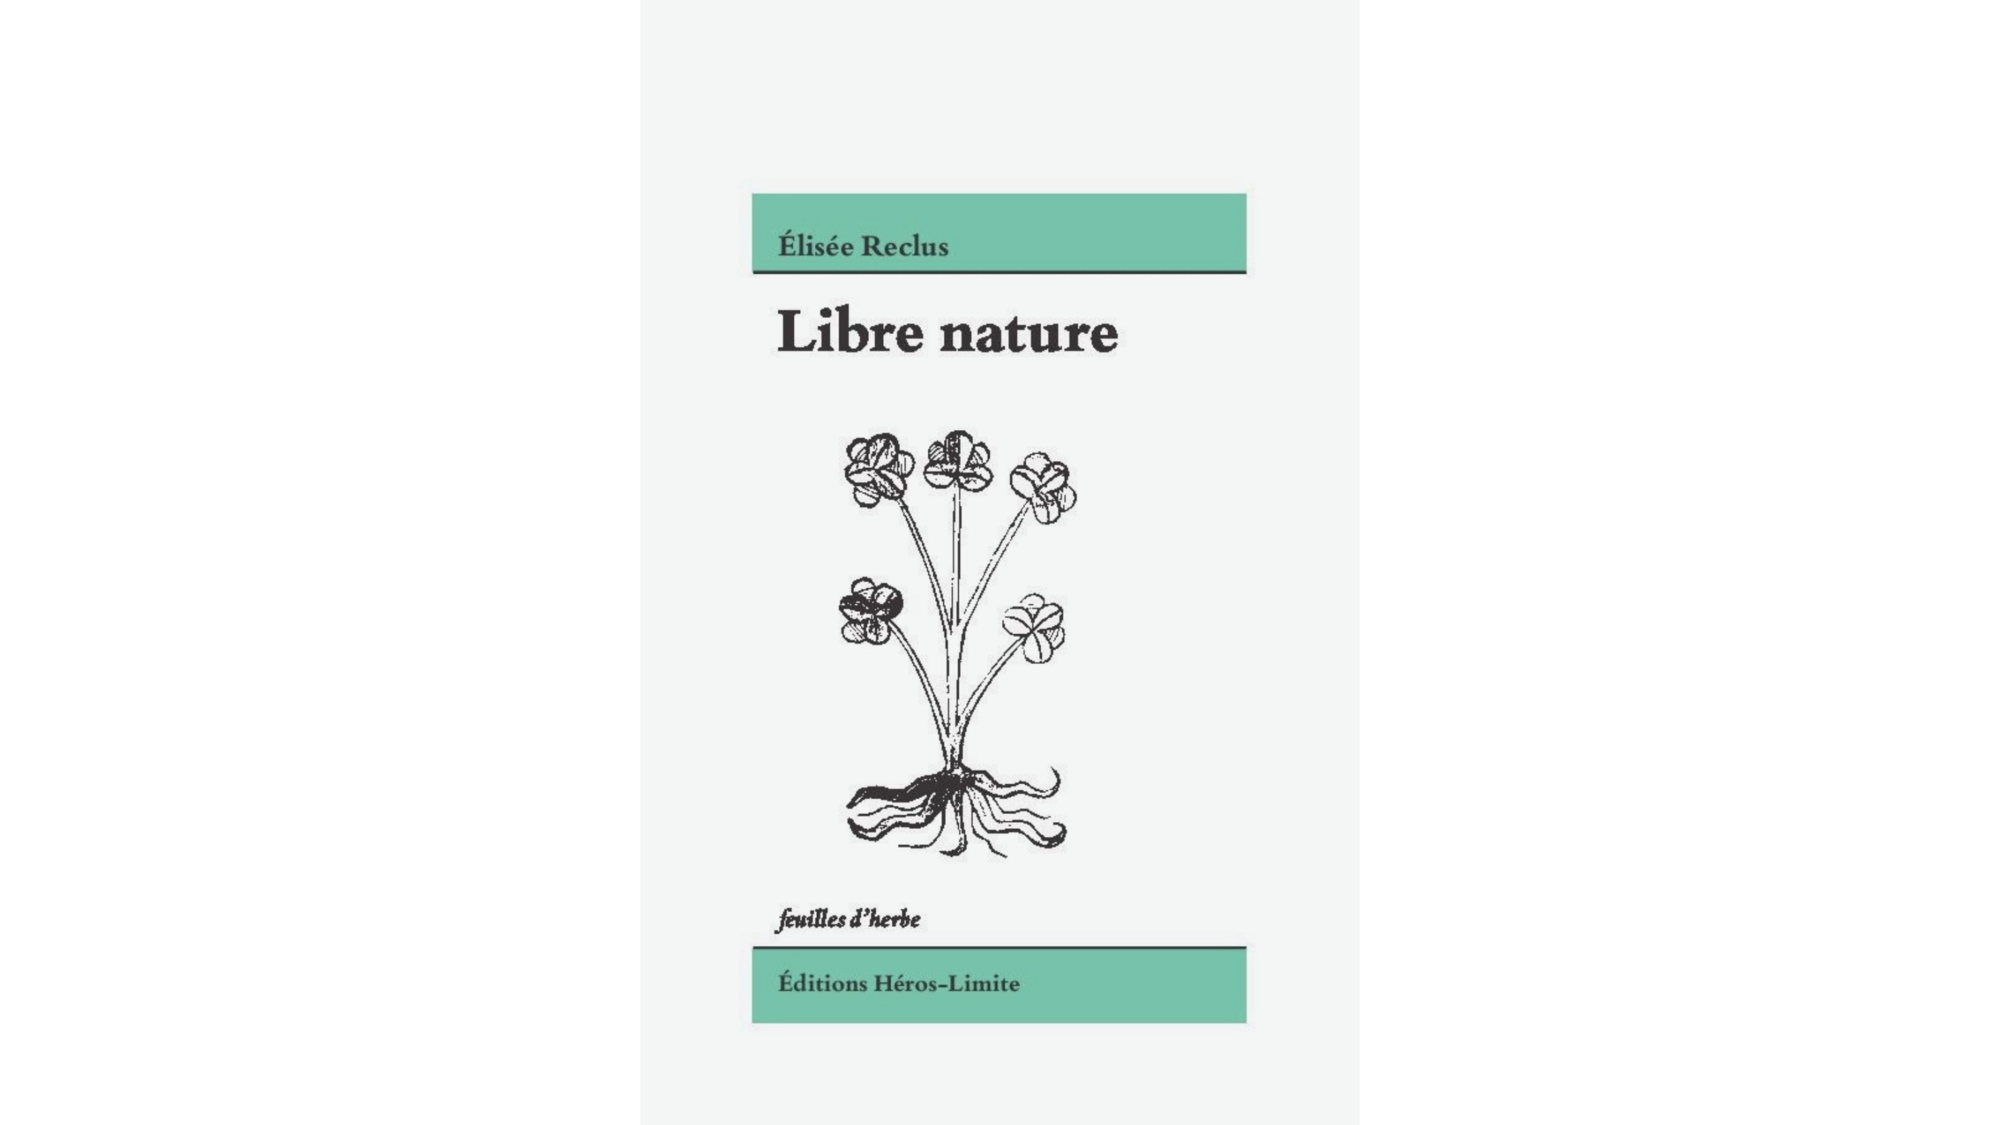 Couverture de l'ouvrage Libre nature d'Elisée Reclus